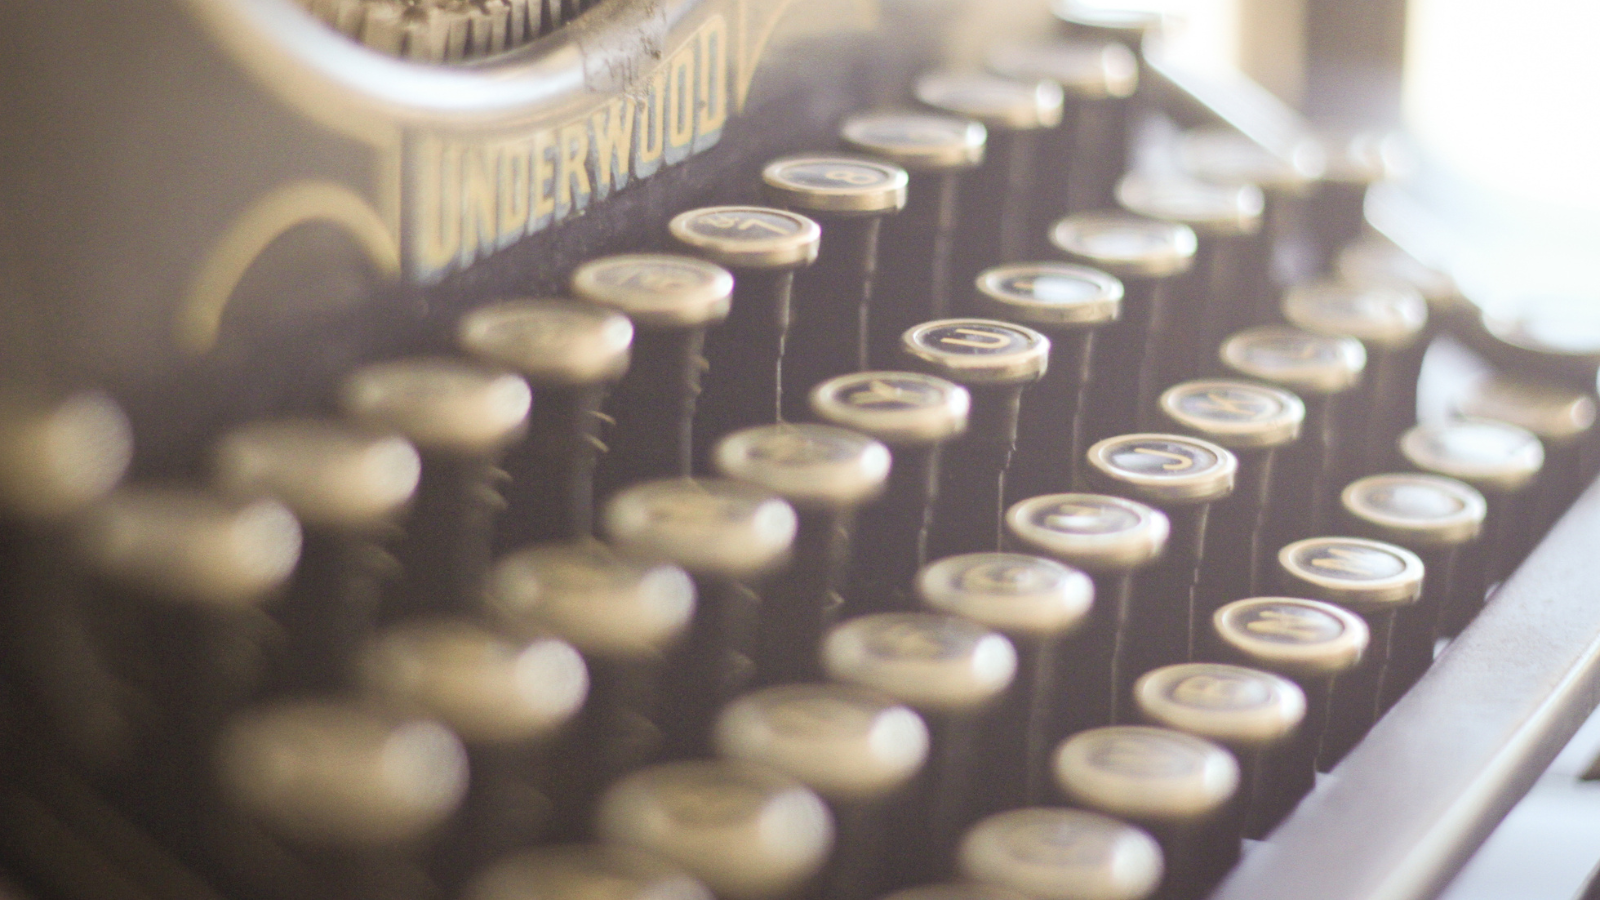 Typewriter up close